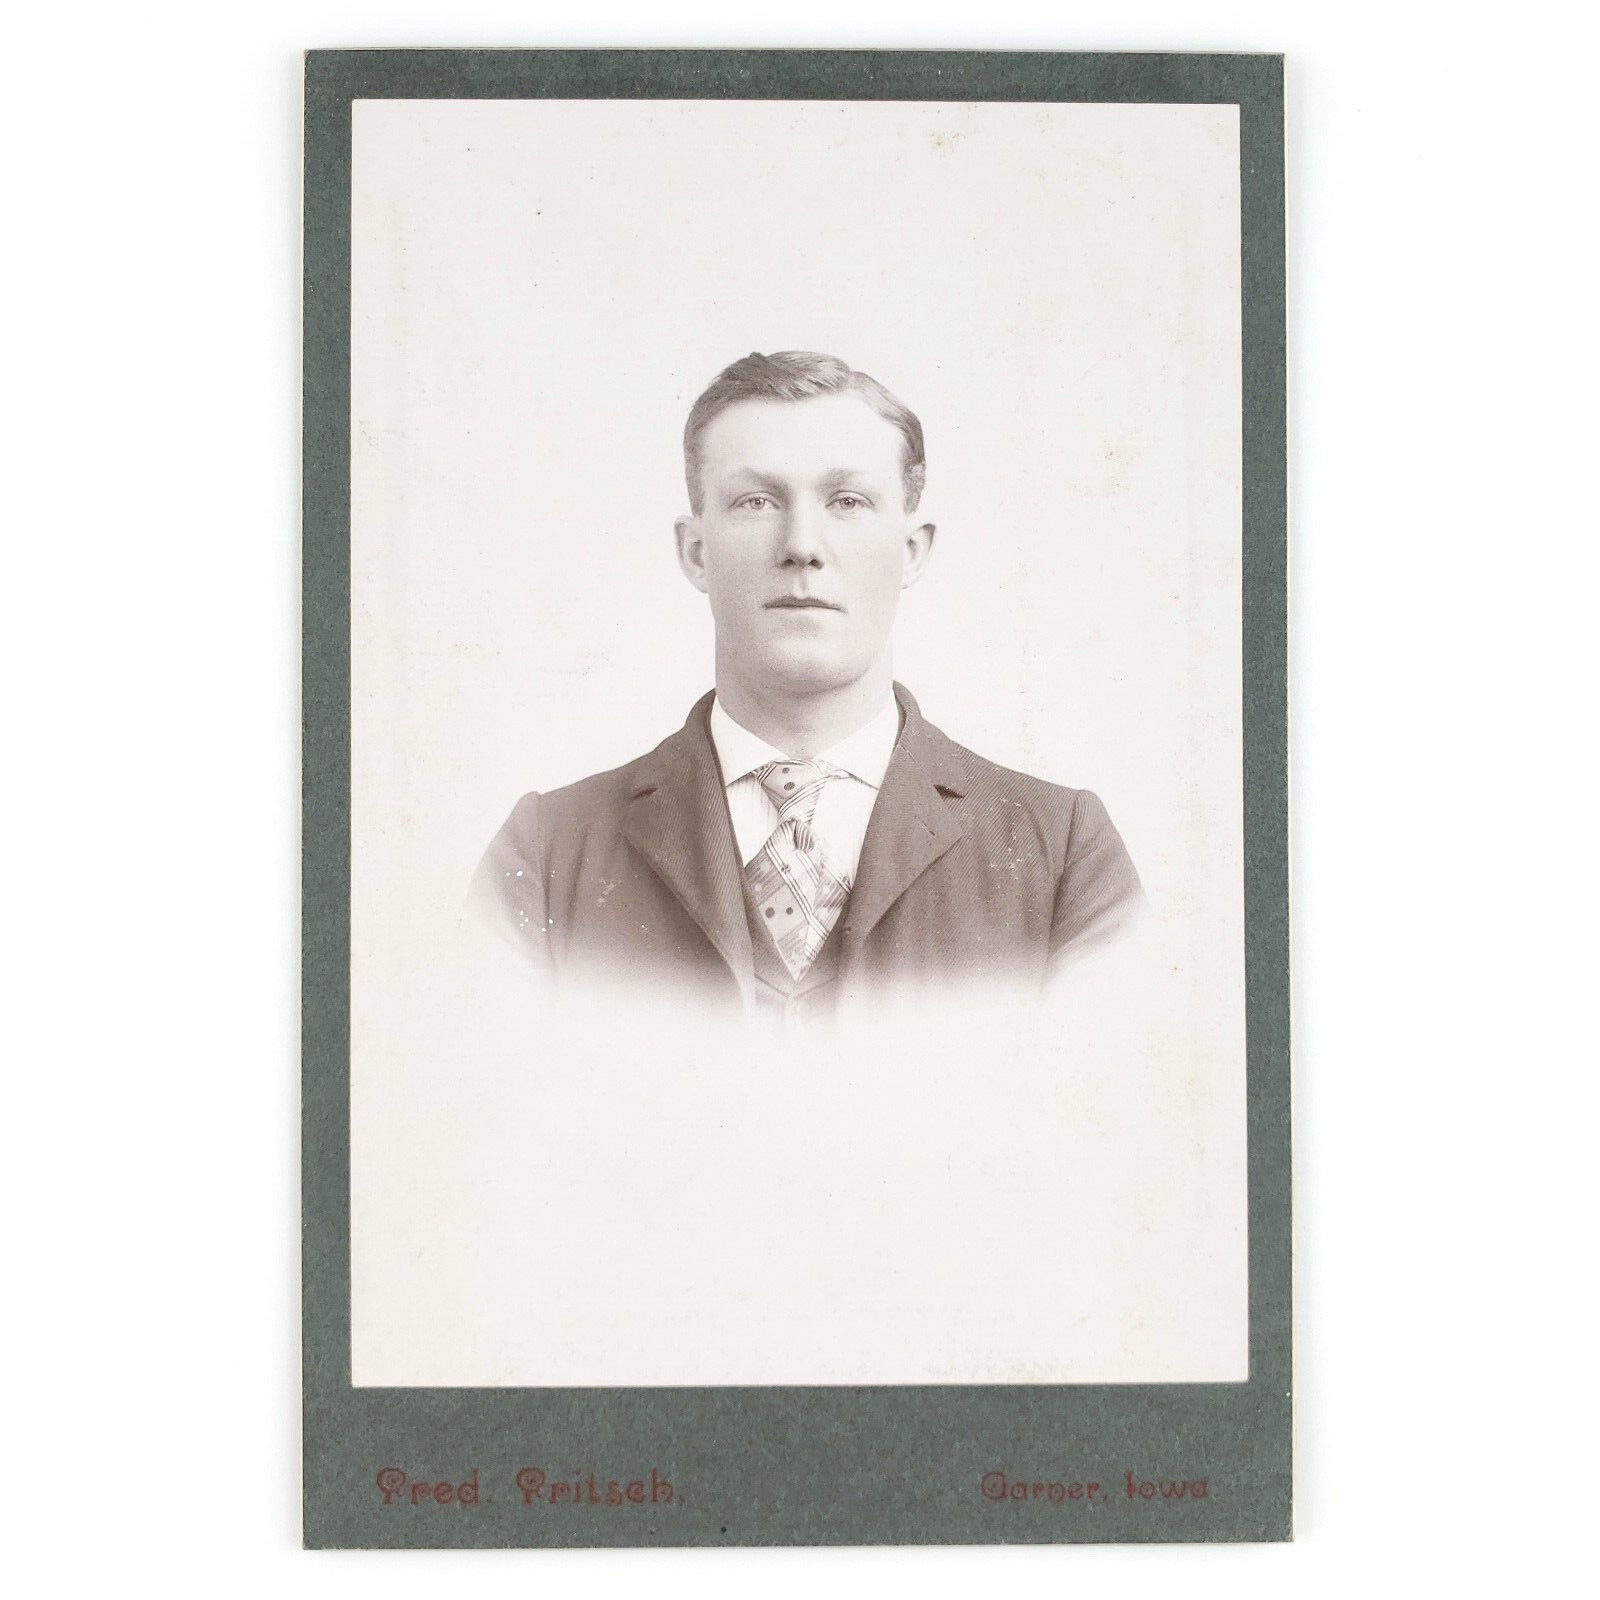 Garner Iowa Man Cabinet Card c1890 Suit Coat Necktie Fred Fritsch Photo B3229